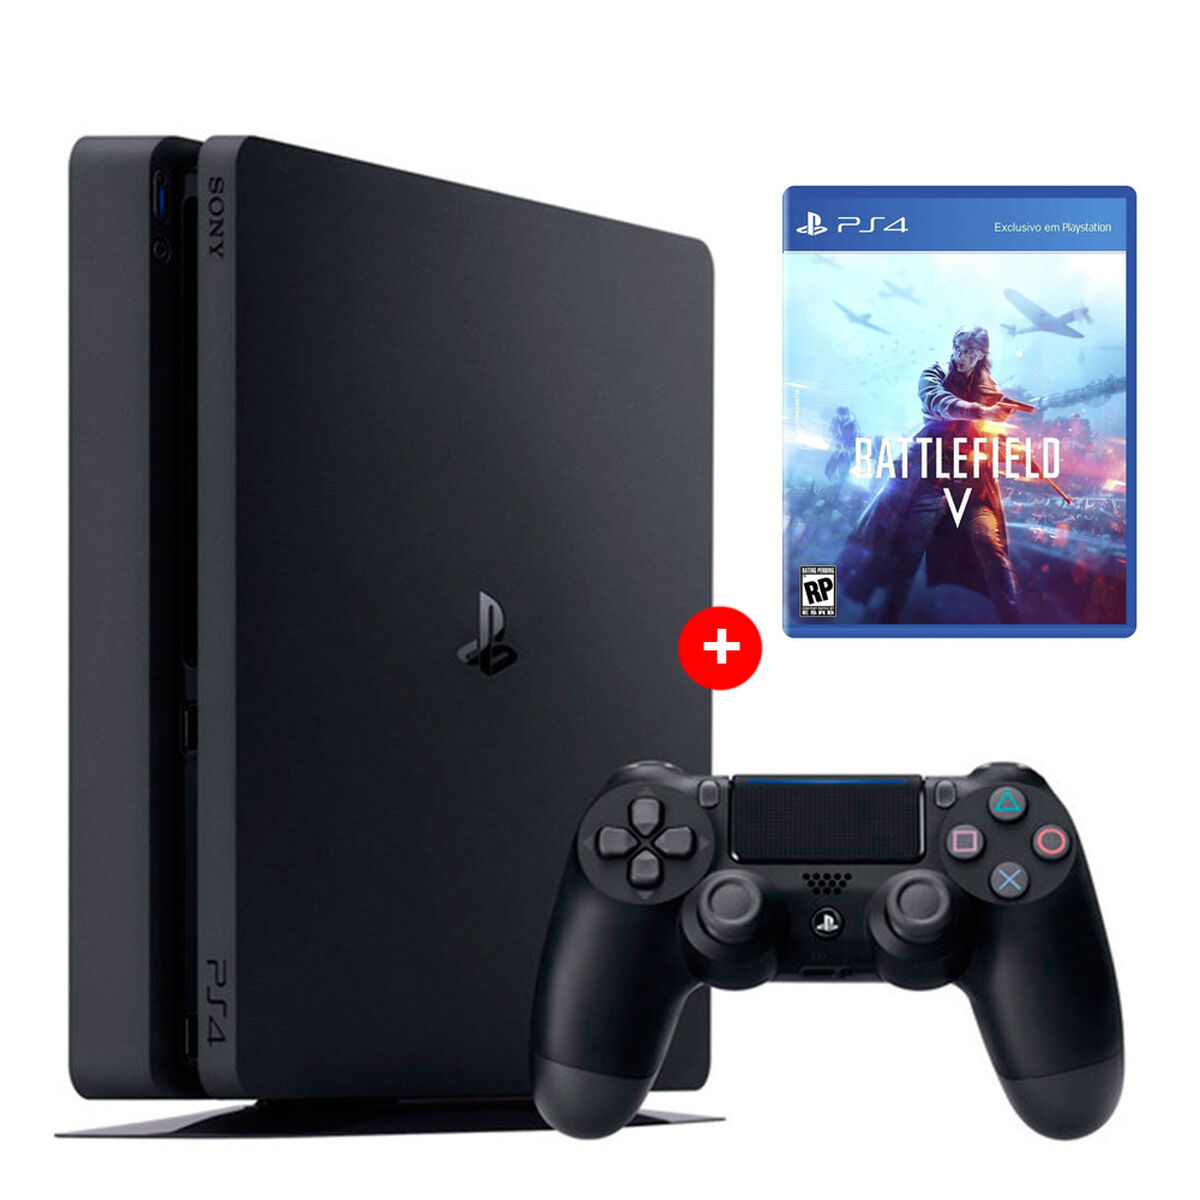 PS4 Sony 500GB Reacondicionada Americana + 1 Mando Inalámbrico DualShock + Juego PS4 EA Battlefield V